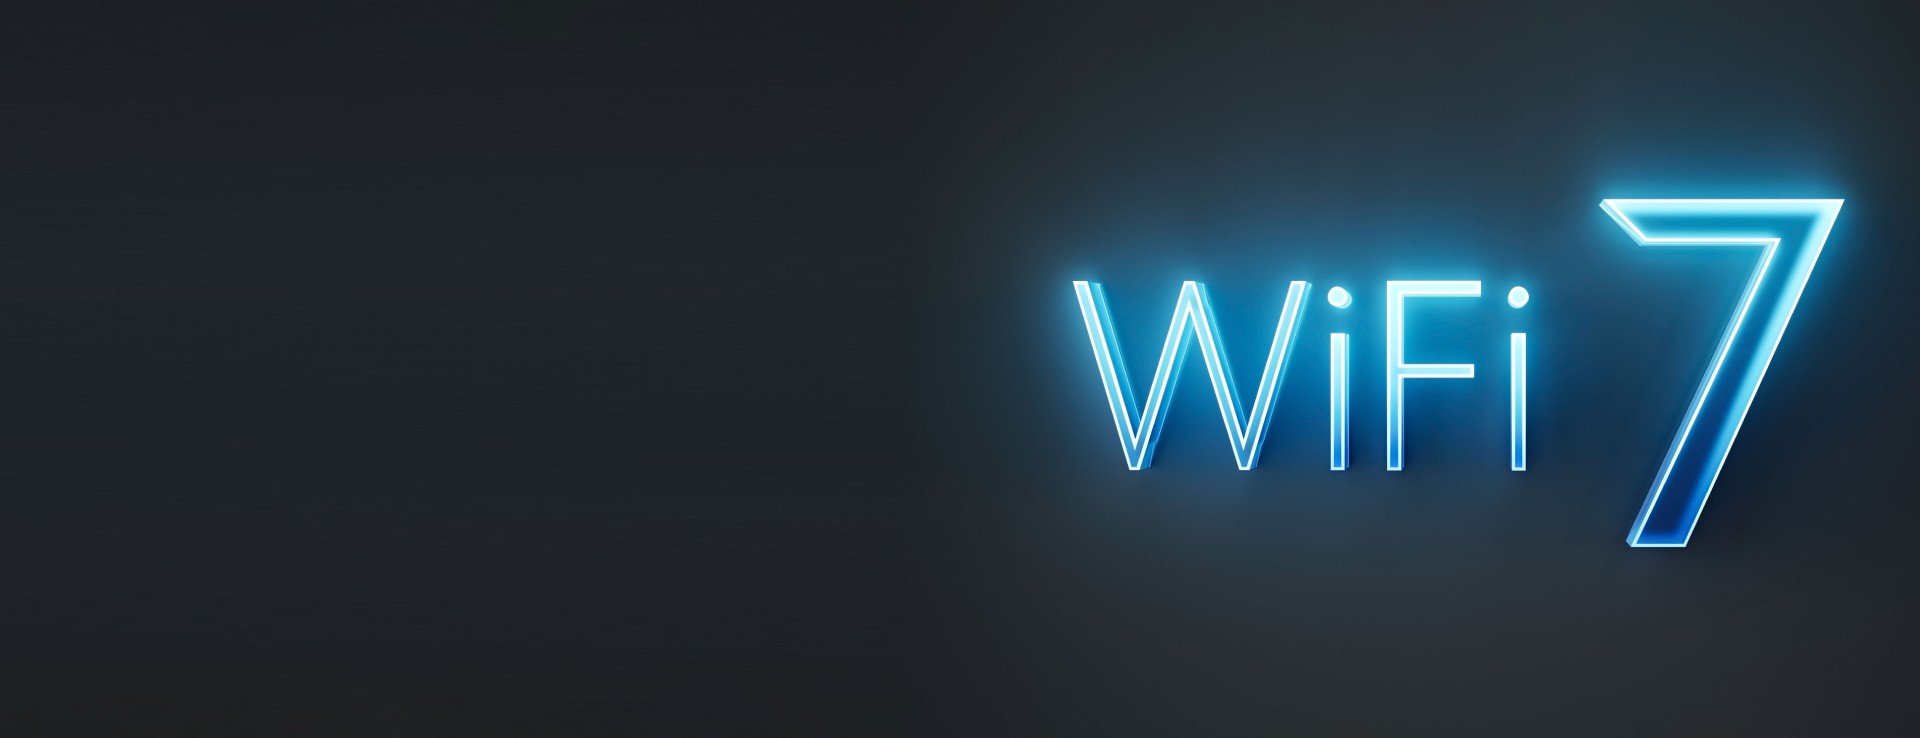 WiFi7 Logo Glowing Blue WiFi 7